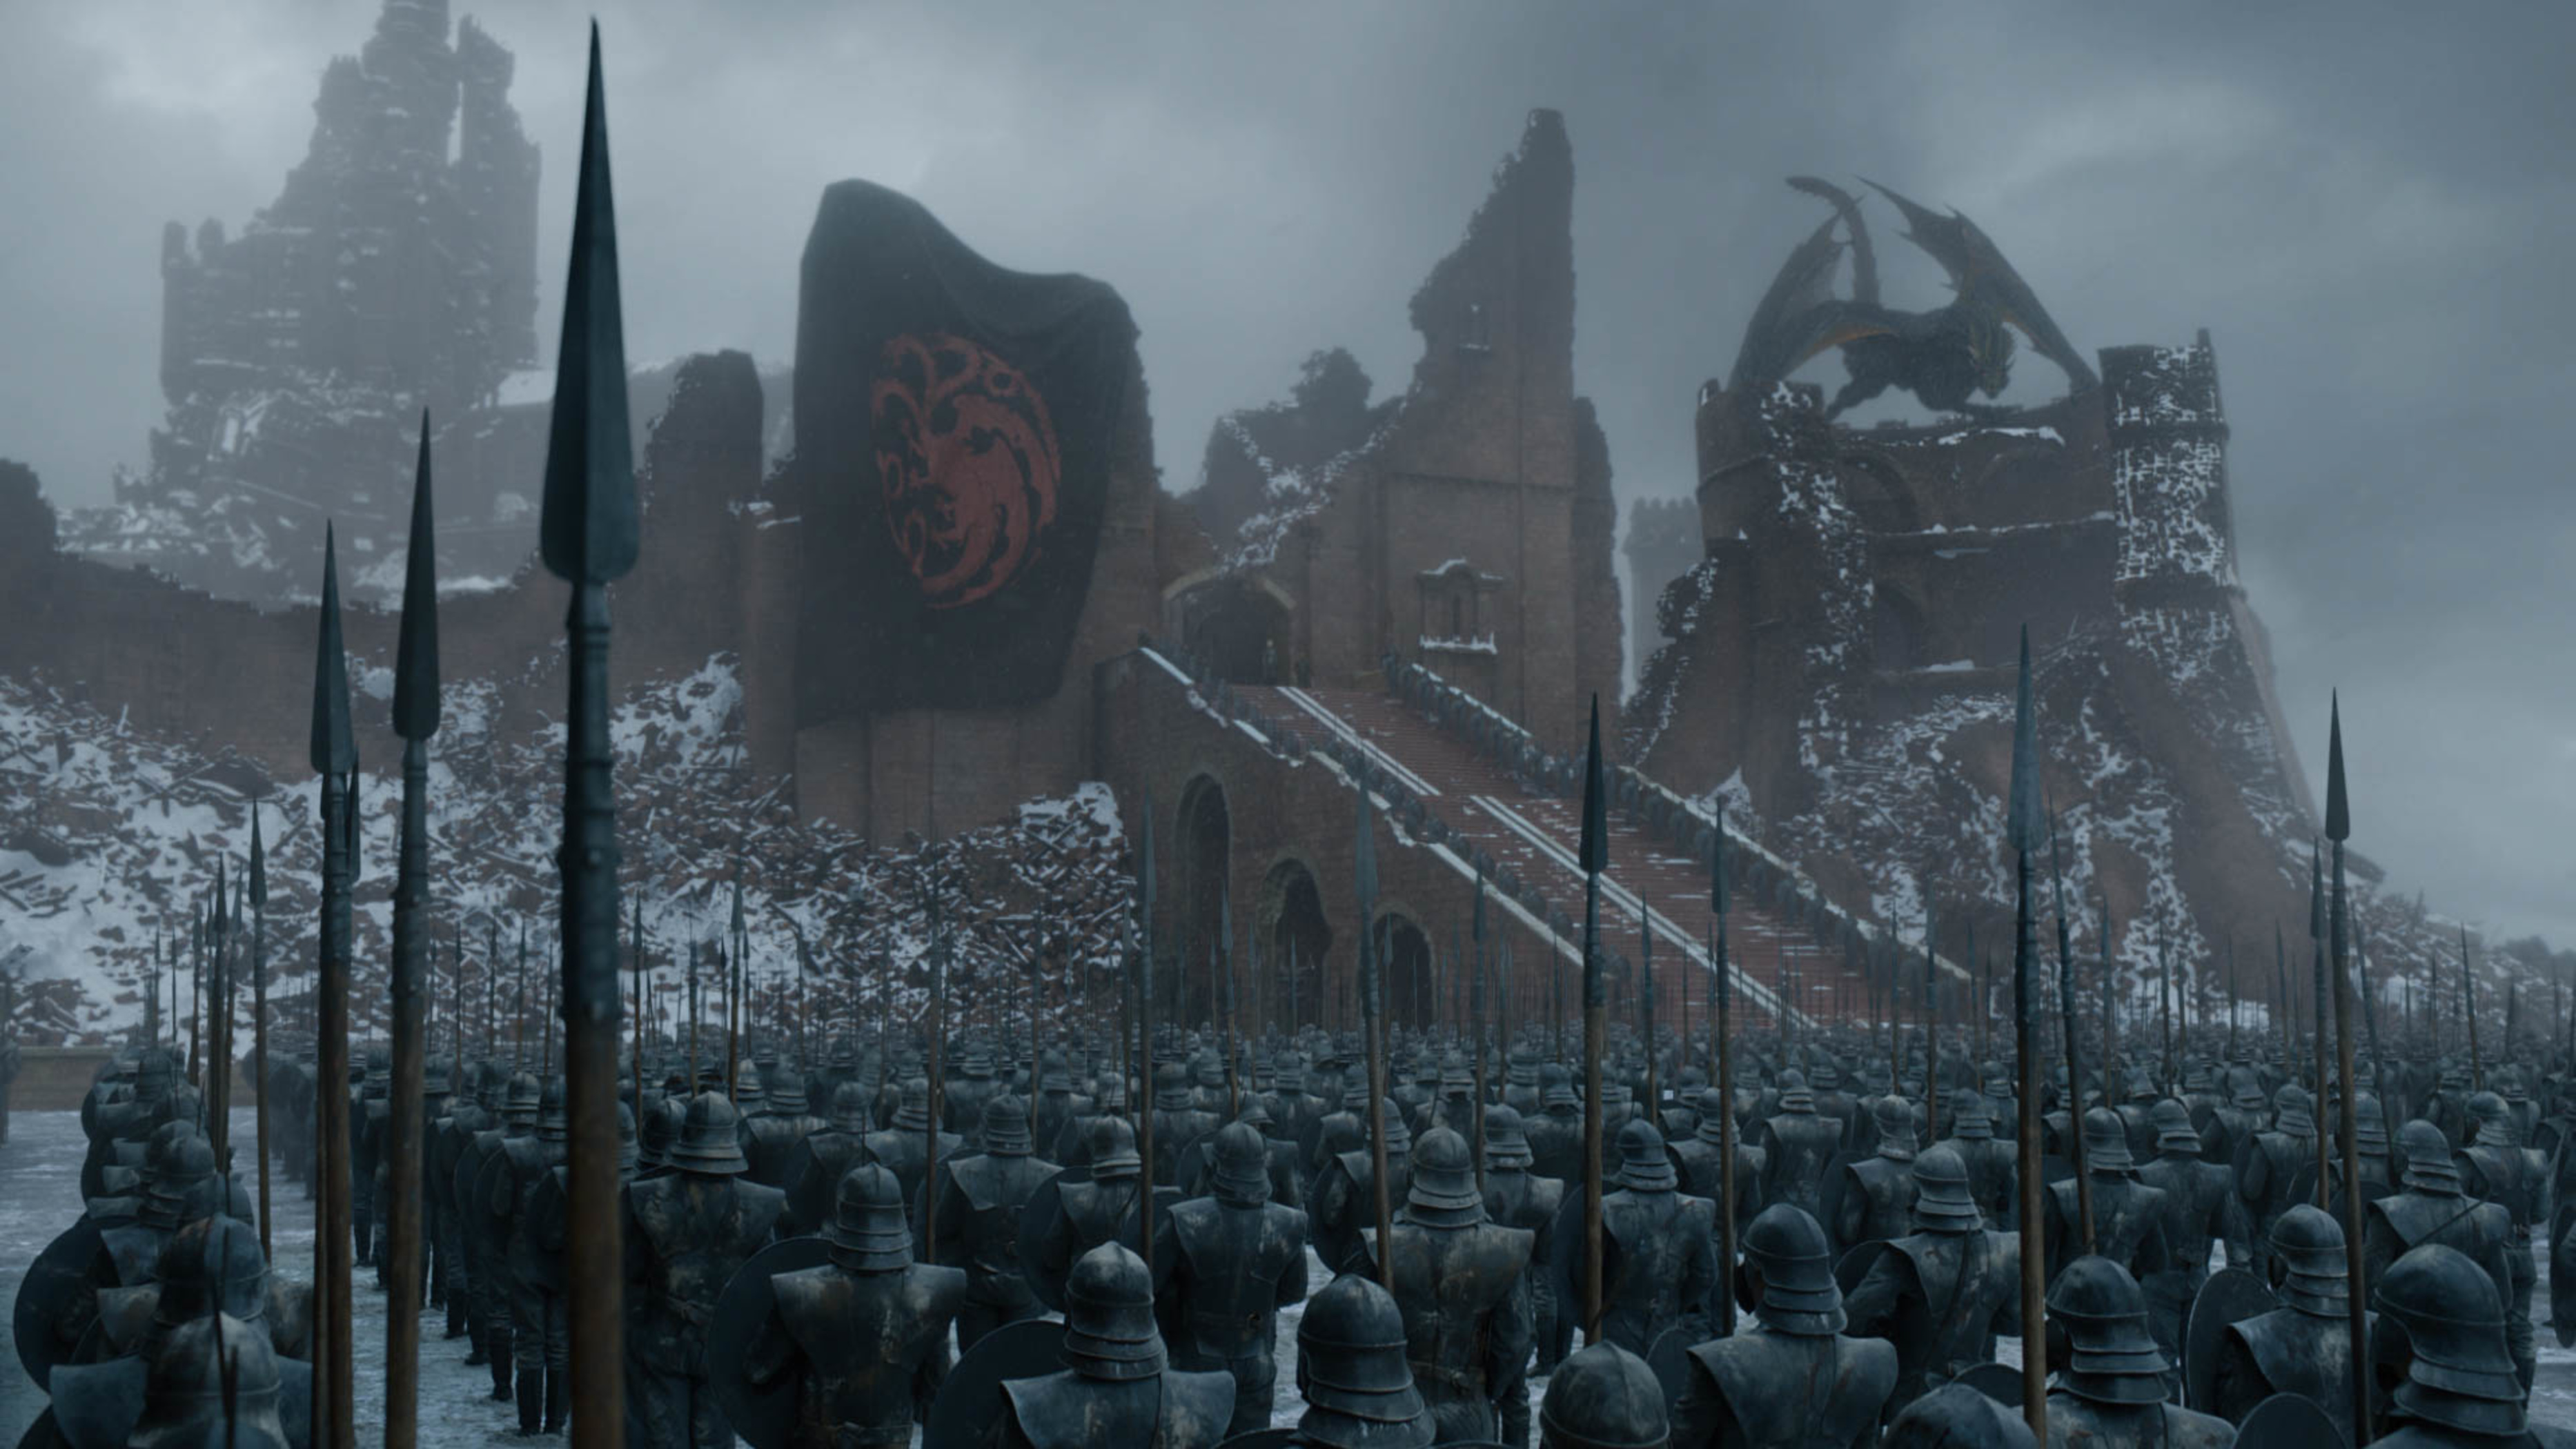 20 HQ Pictures Wann Läuft Game Of Thrones / Endlich Offiziell Das Ist Die Neue Game Of Thrones Serie Serien News Filmstarts De